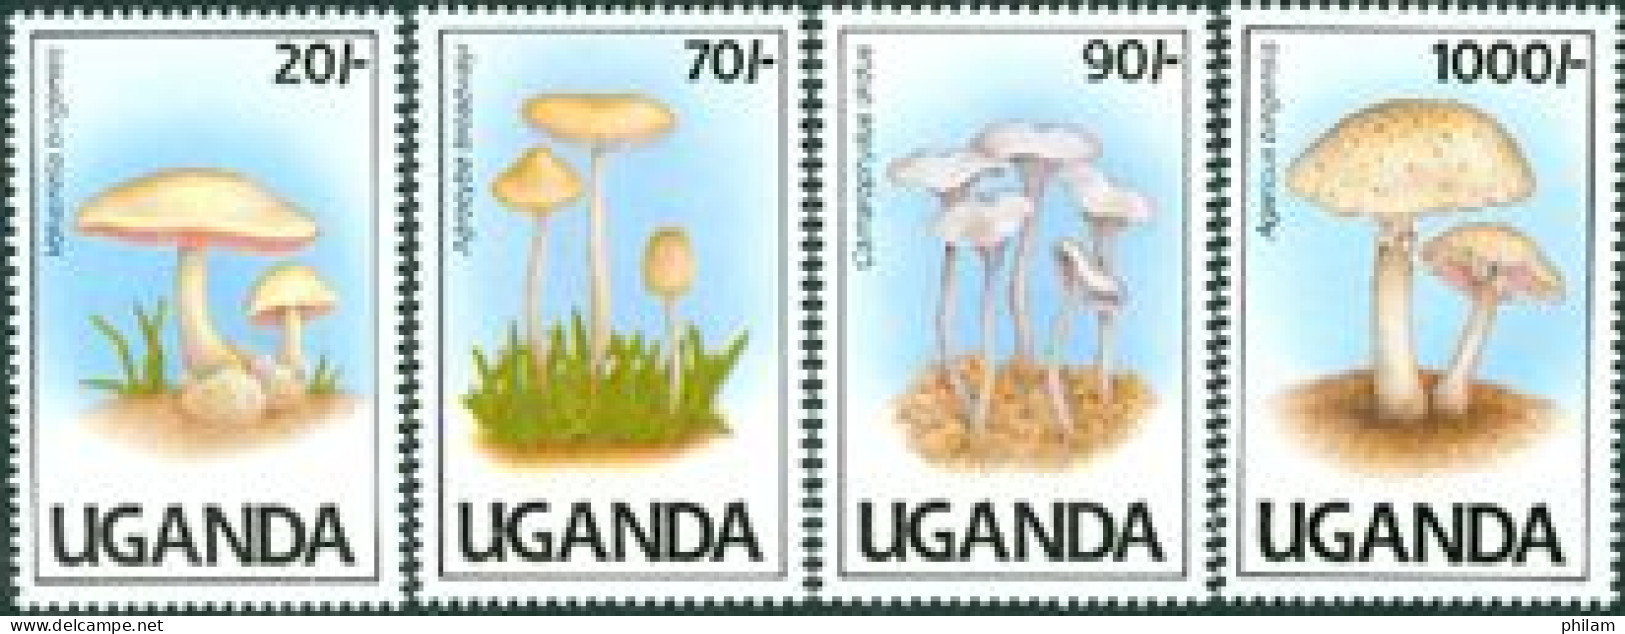 OUGANDA 1991 - Champignons II - (volvariella Bigensis) - 4 V. - Uganda (1962-...)